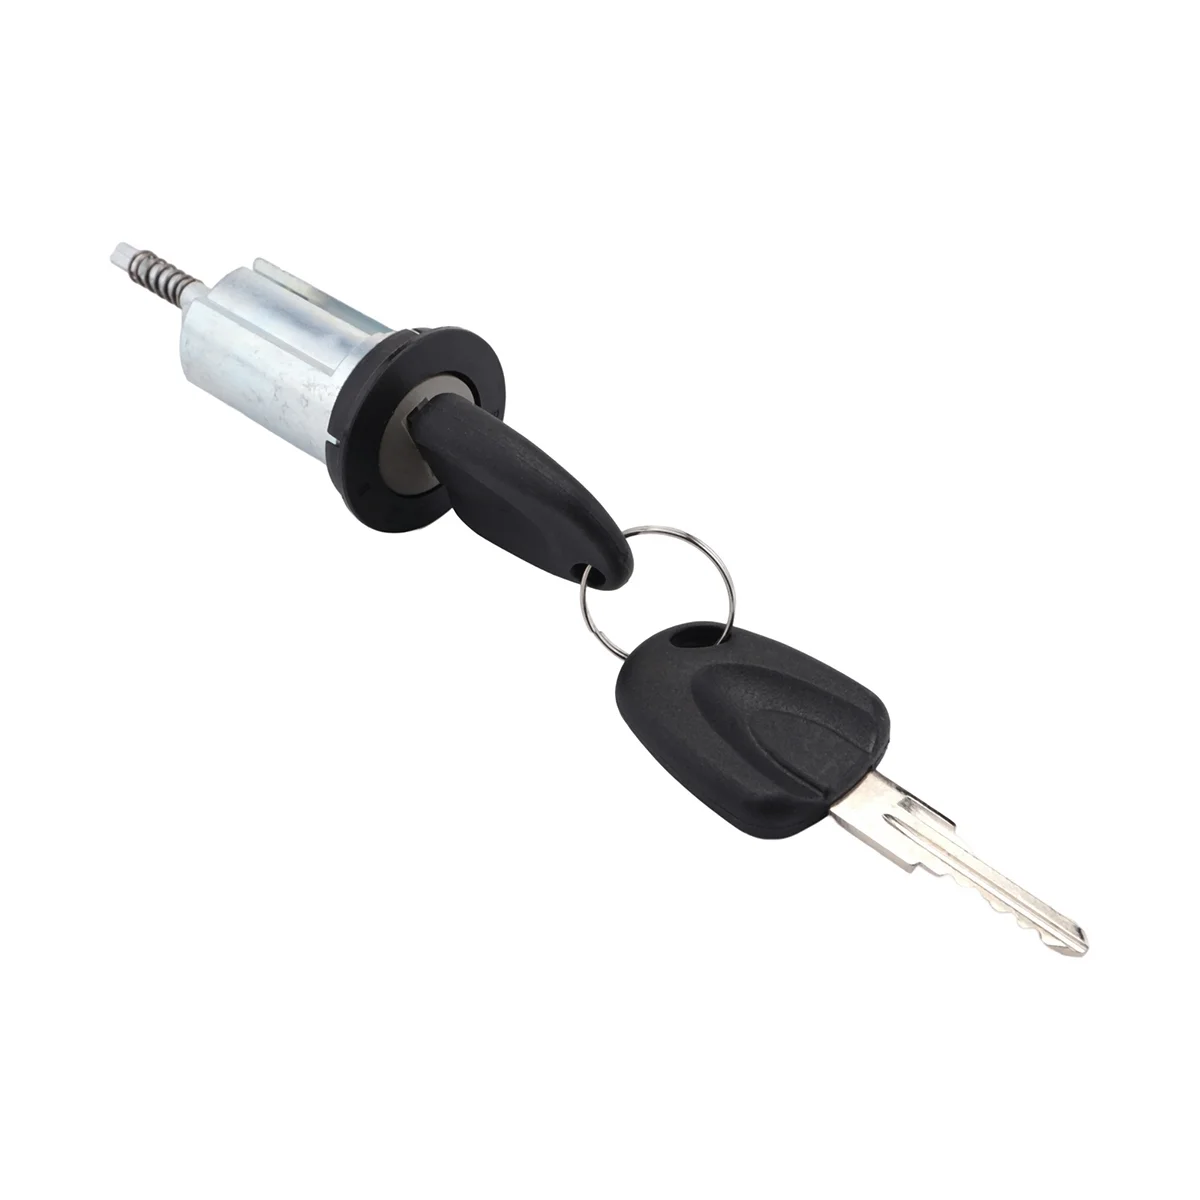 Ключ за запалване на стартера цилиндрично заключване с ключове за Opel Ascona C Vauxhall Corsa 0913694 09115863